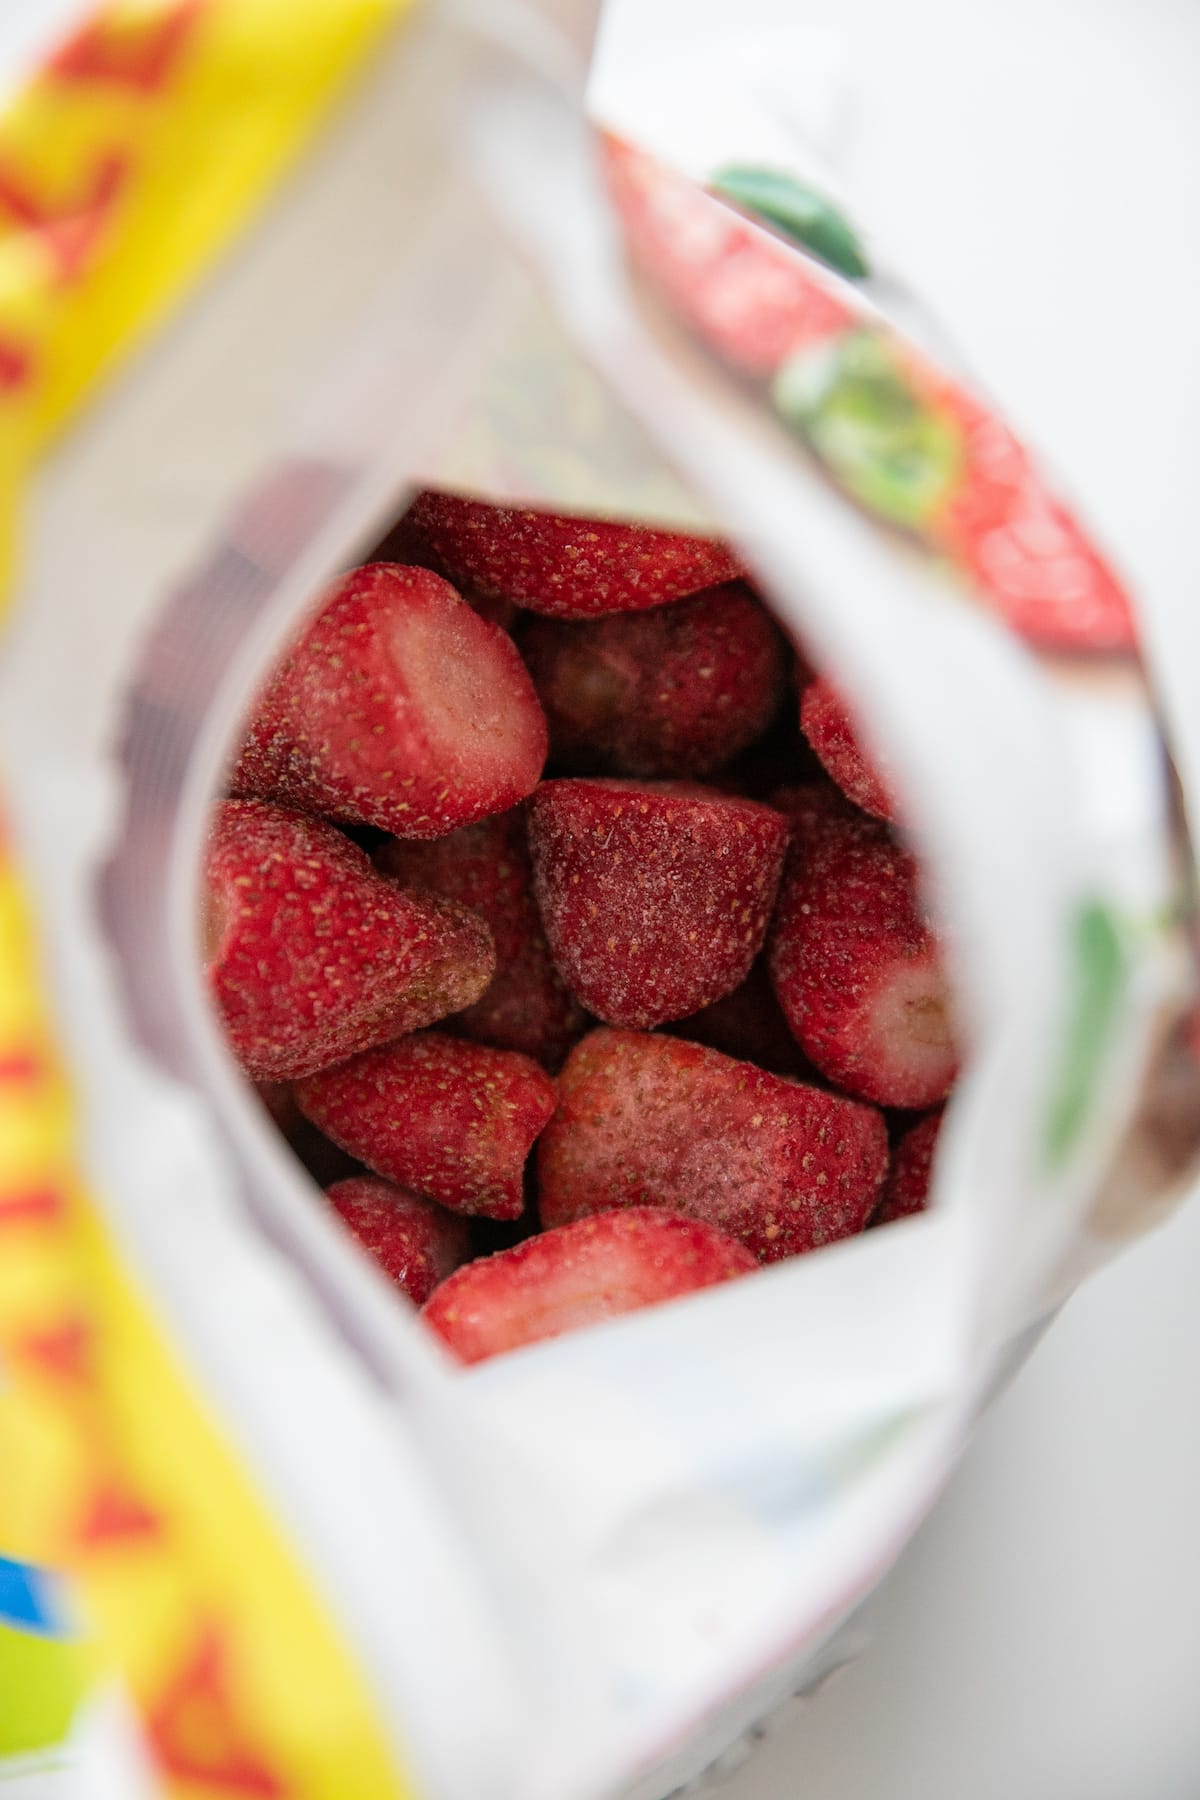 frozen strawberries in bag